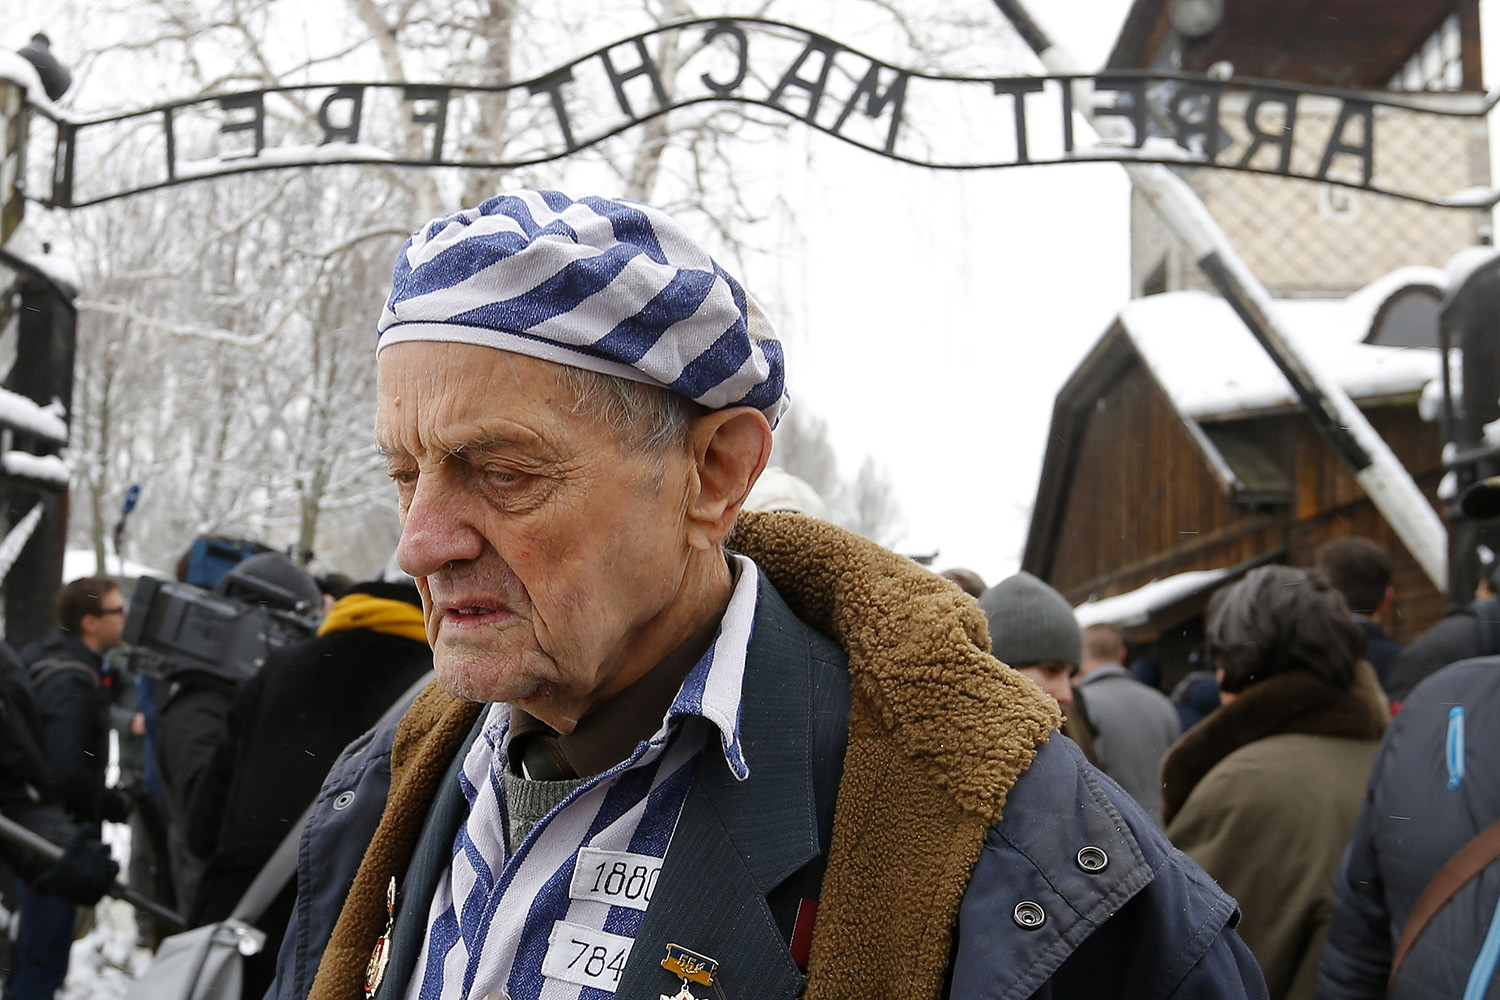 Buscan a criminales nazis 70 años después del final de la Segunda Guerra Mundial